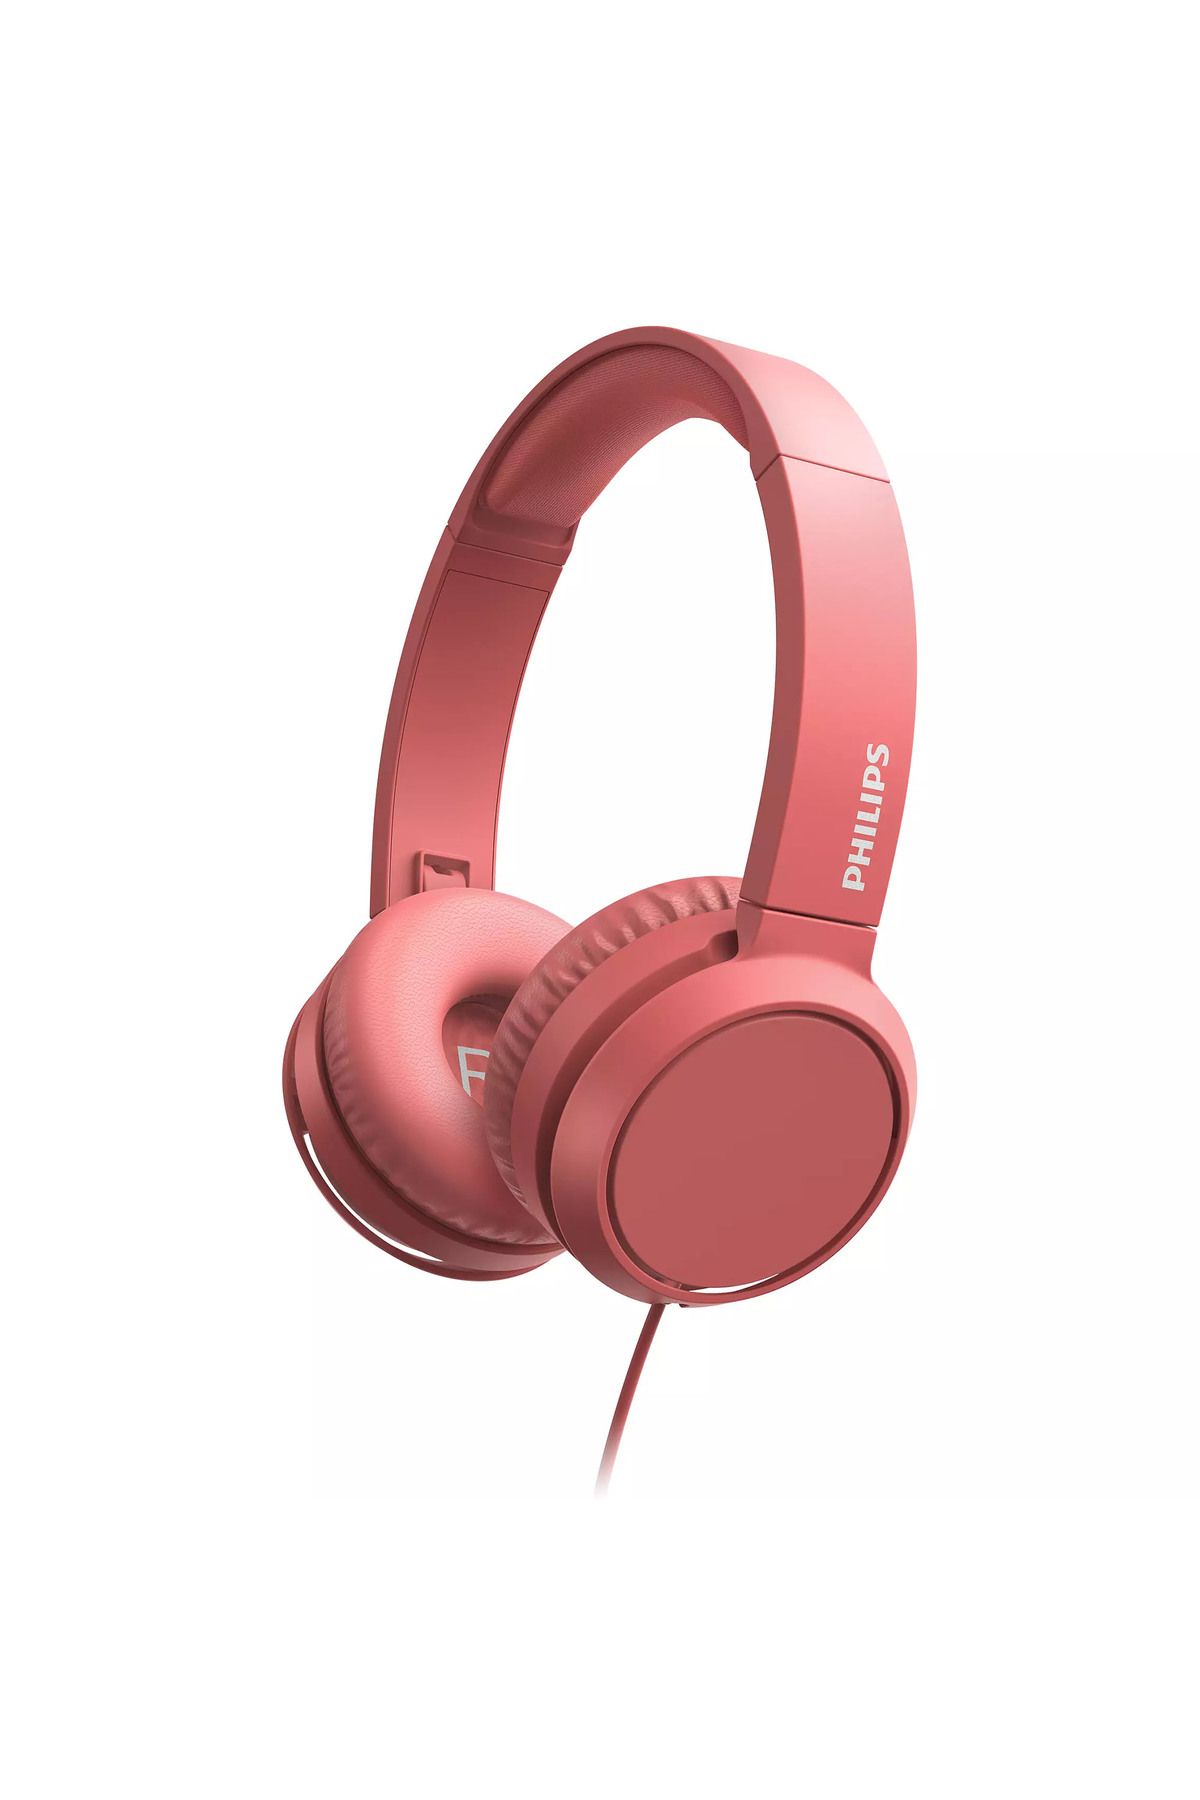 Philips Tah4105rd Kırmızı Mikrofonlu Kablolu Kulak Üstü Kulaklık